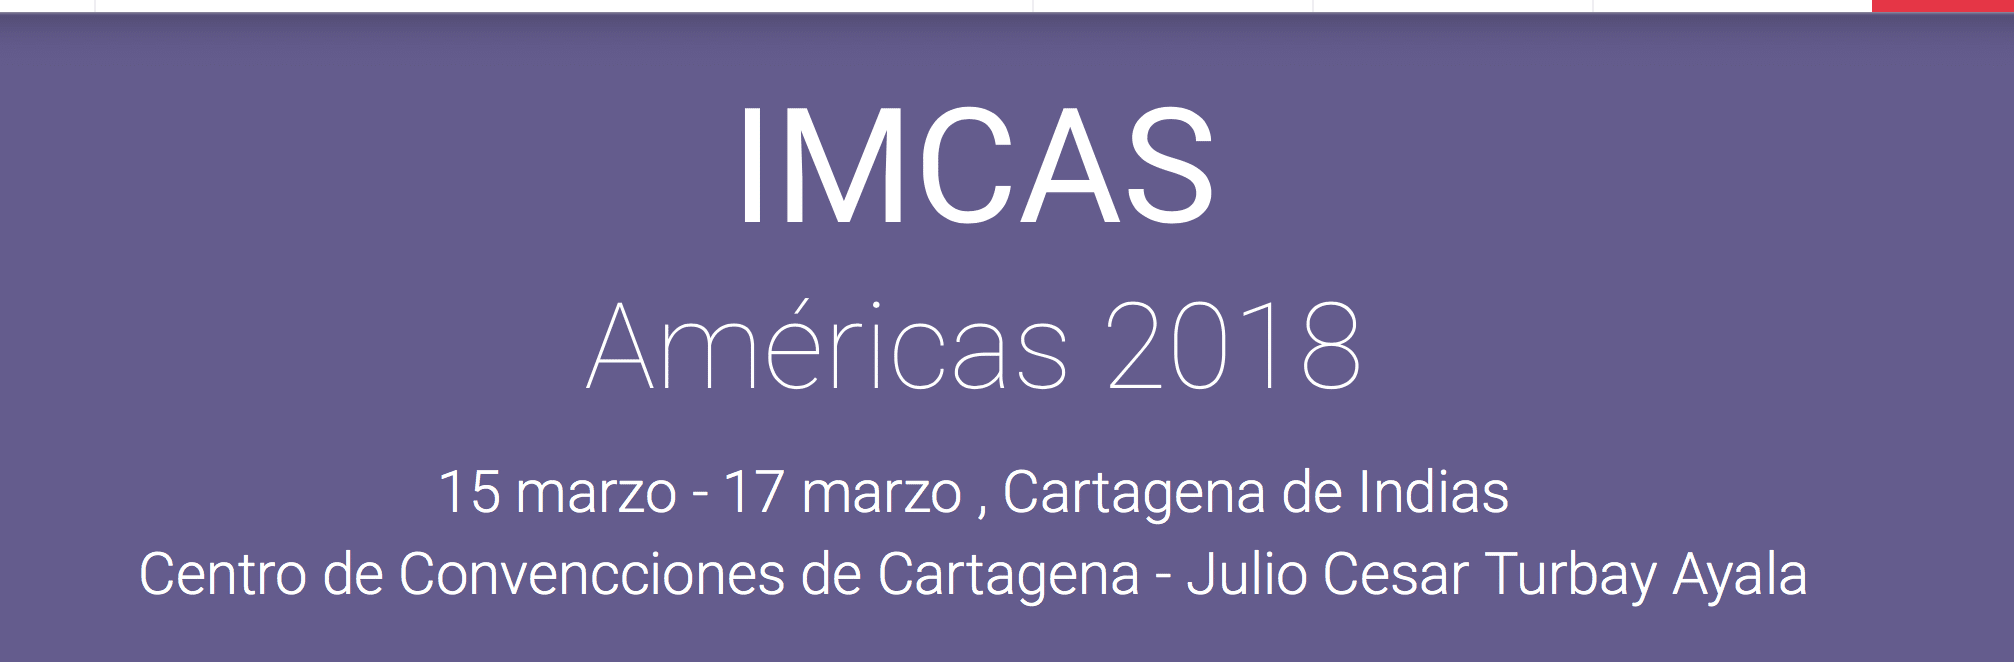 IMCAS Américas 2018